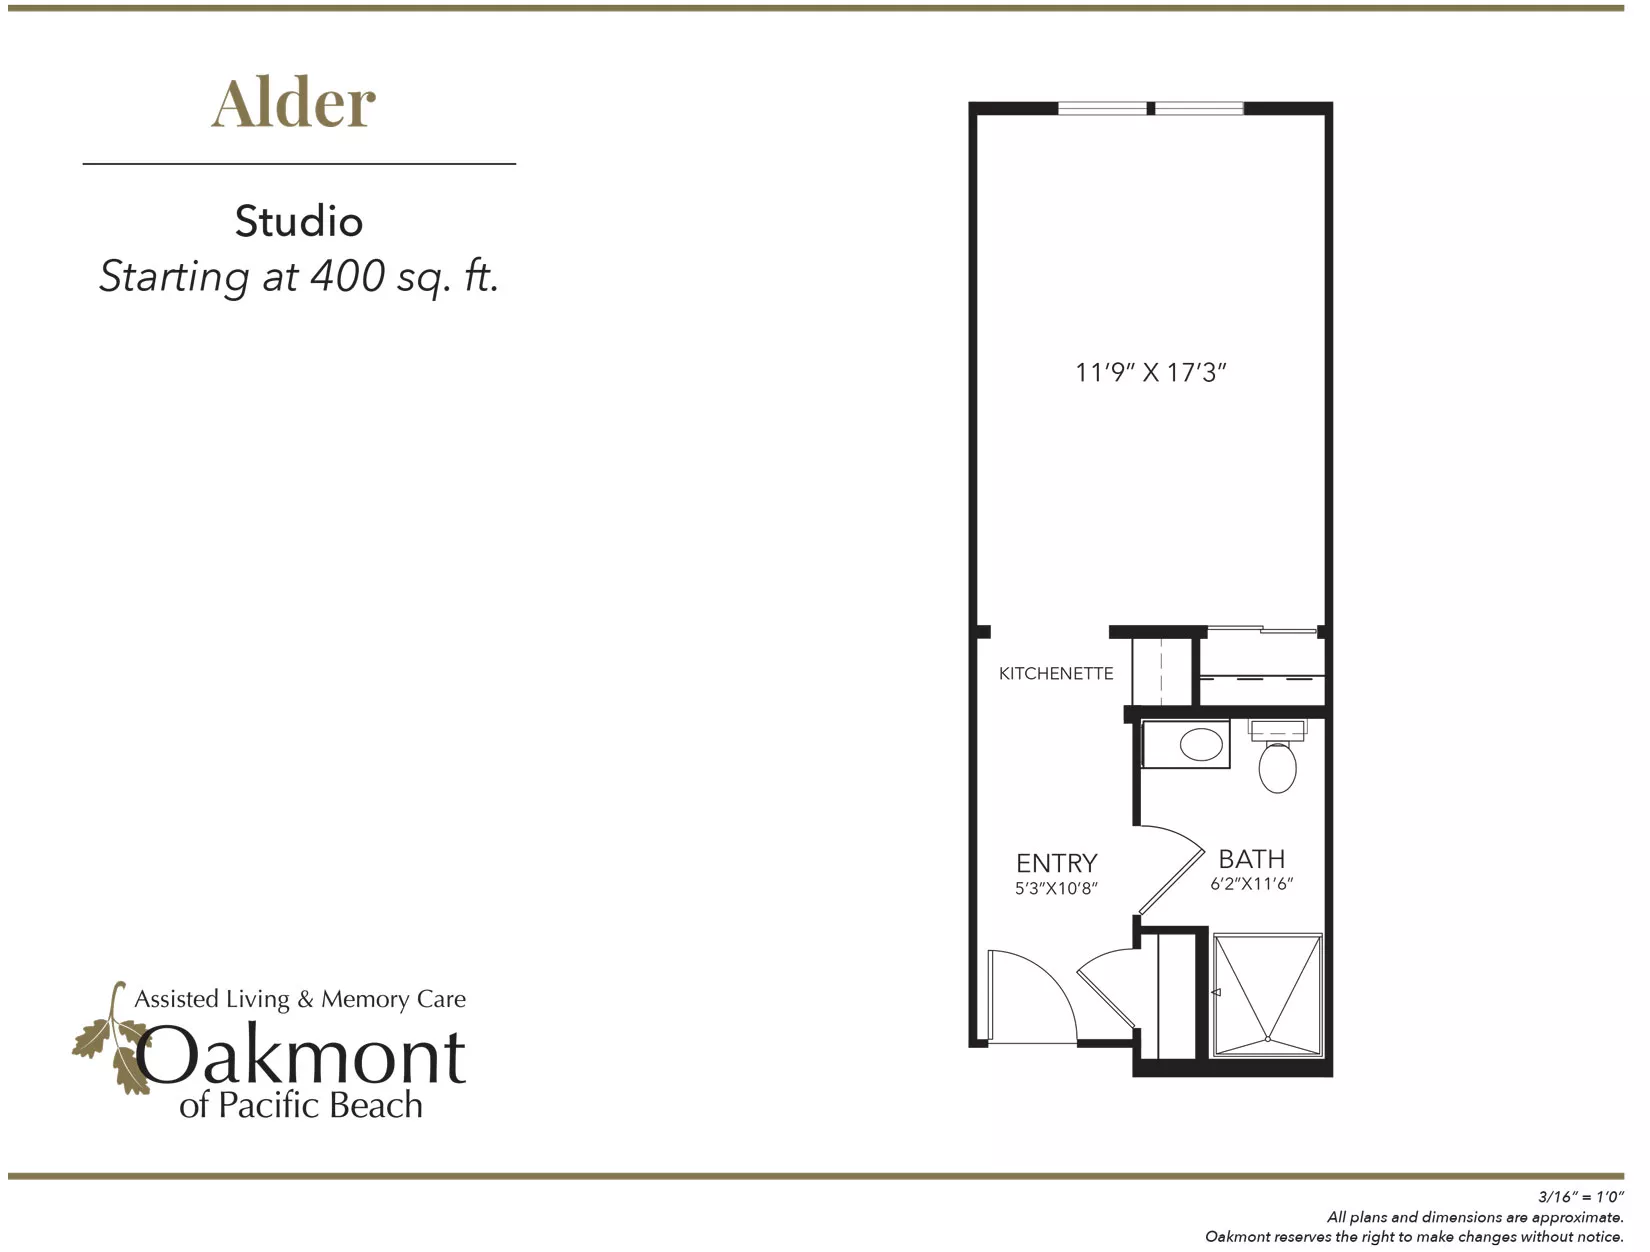 Alder Studio Floor Plan